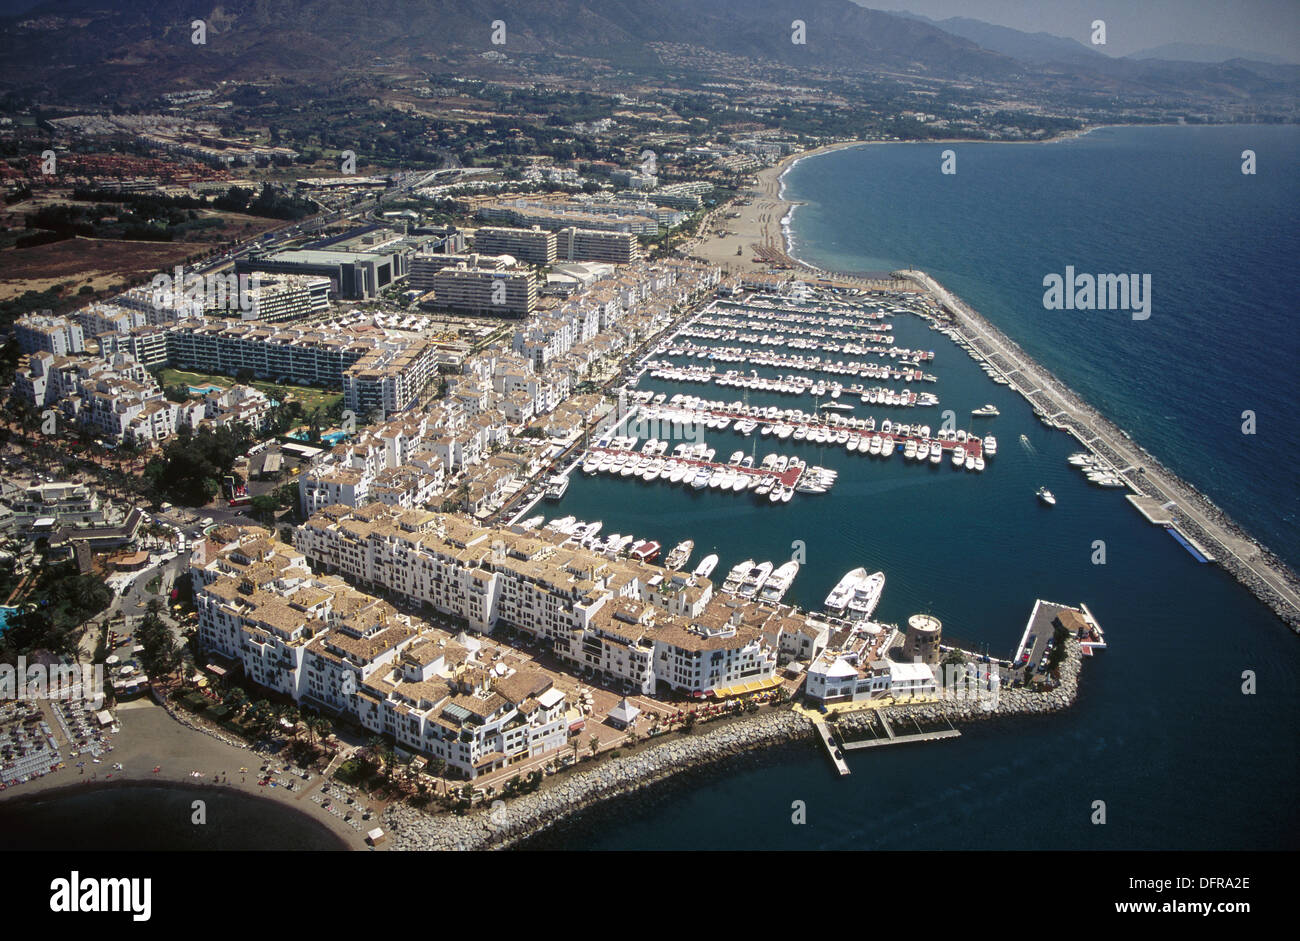 Puerto Banus. Marbella. Malaga province. Costa del Sol. Andalucia. Spain  Stock Photo - Alamy